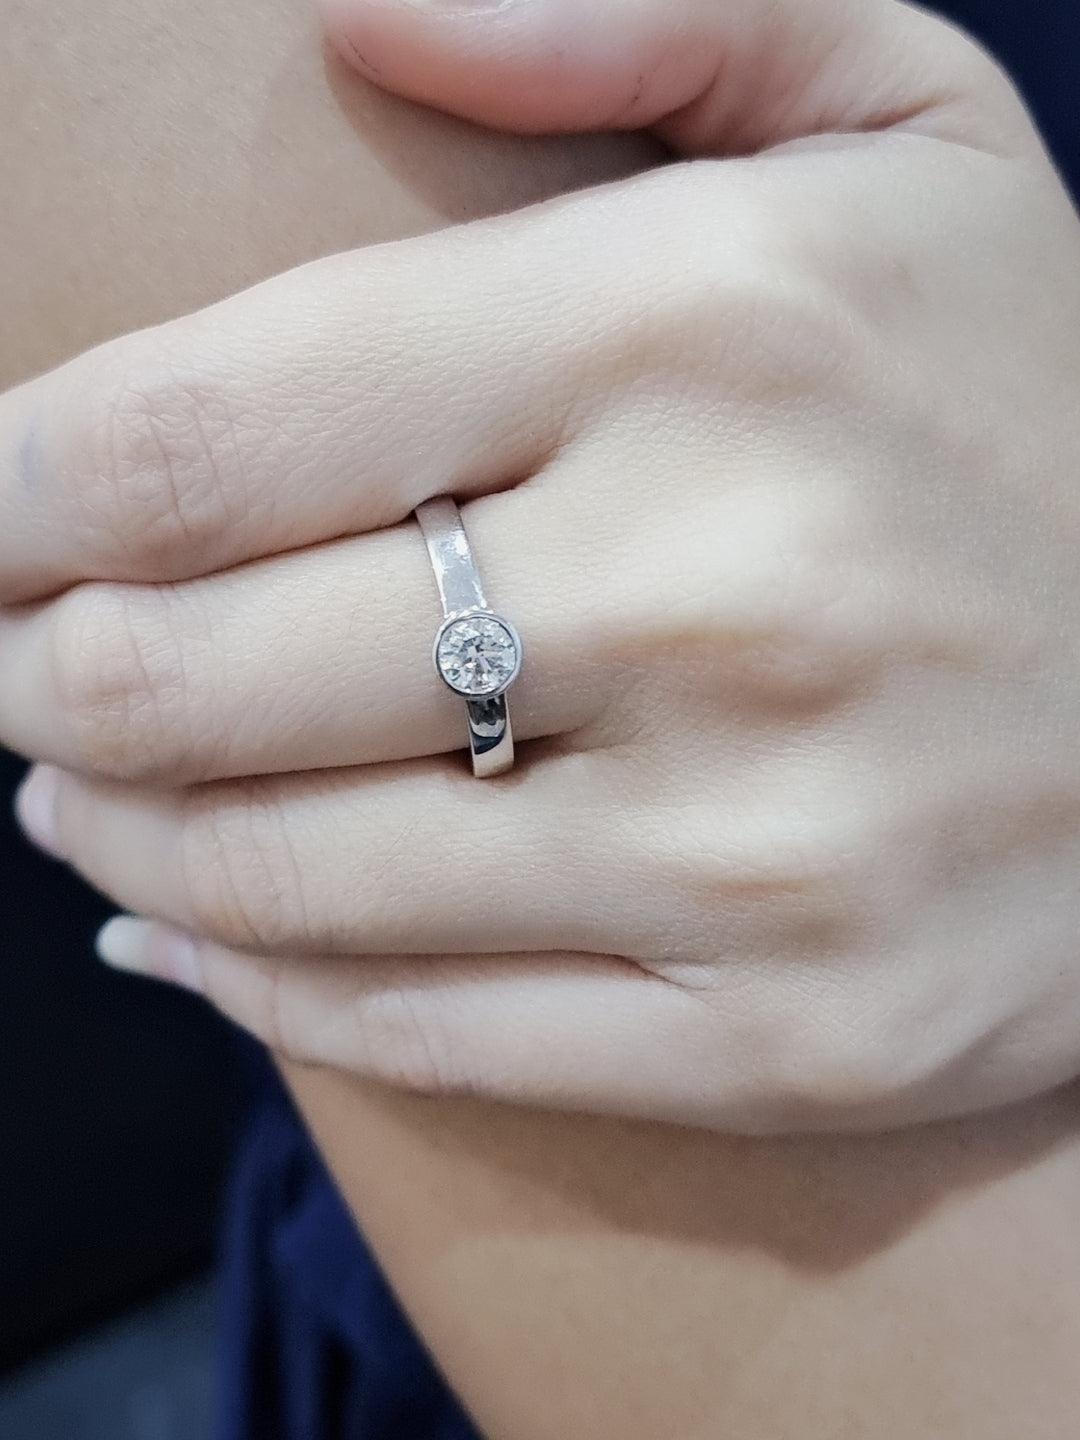 Bezel Set Solitaire Diamond Ring In 18k White Gold.